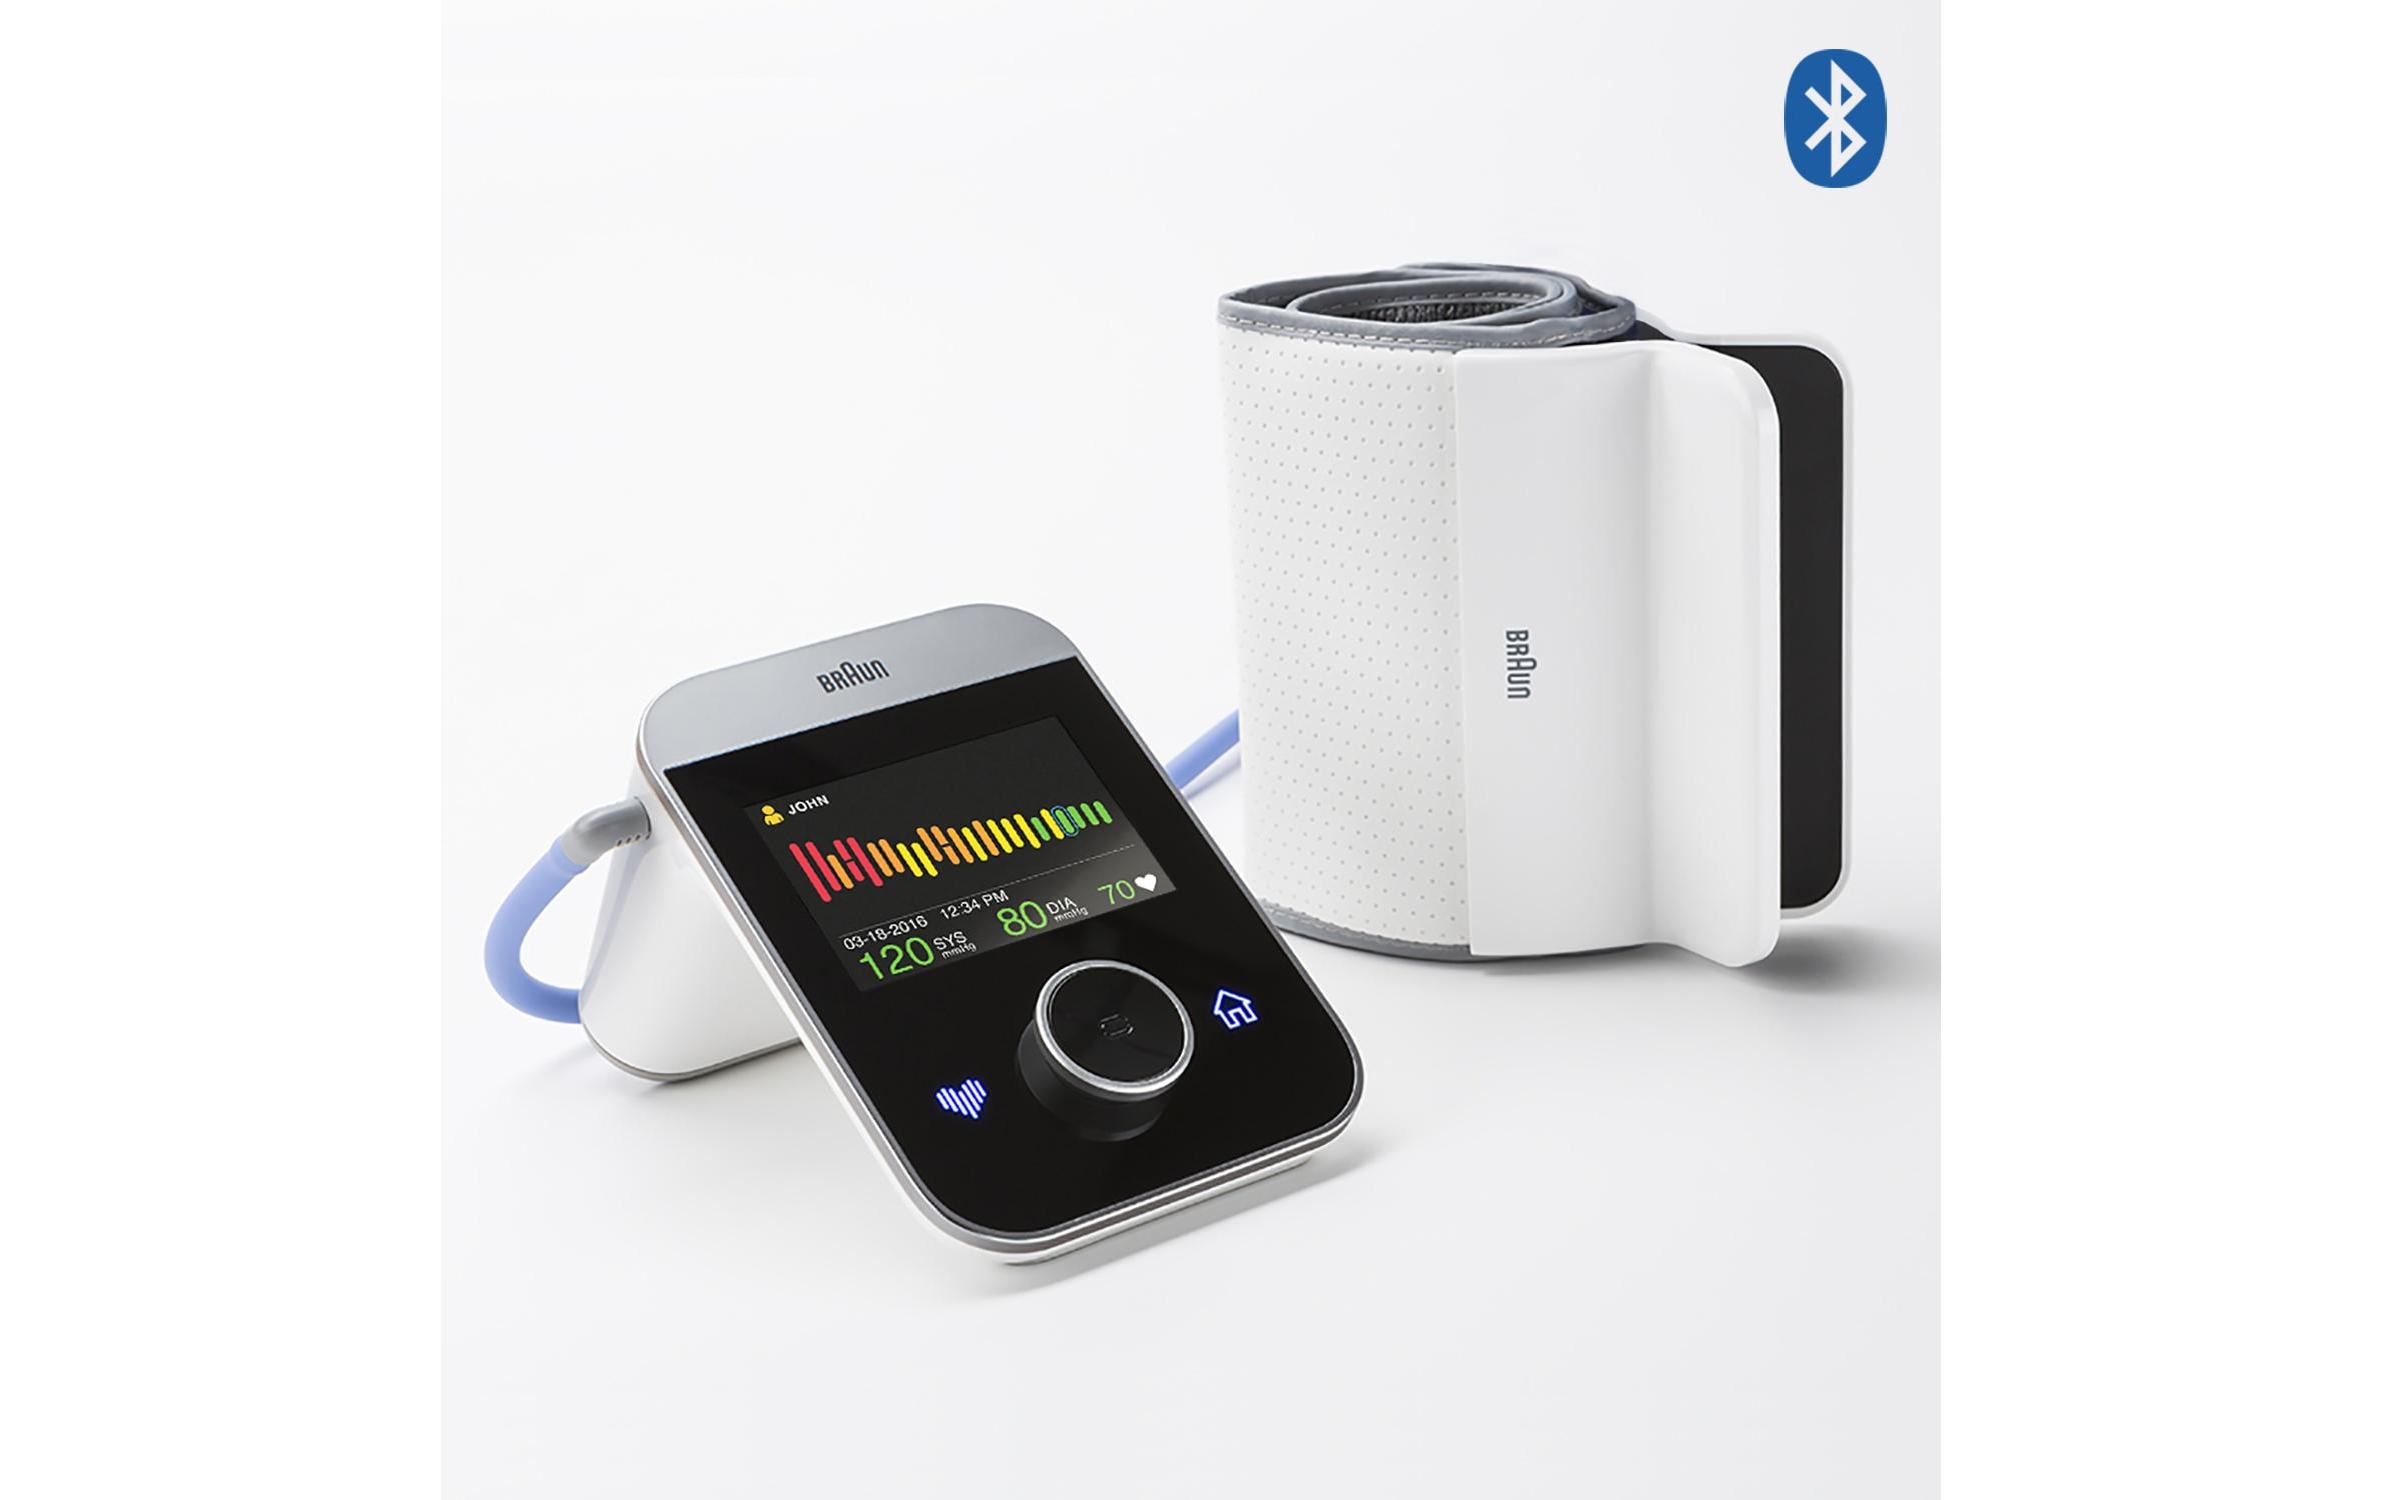 Braun Oberarm-Blutdruckmessgerät »ActivScan 9«